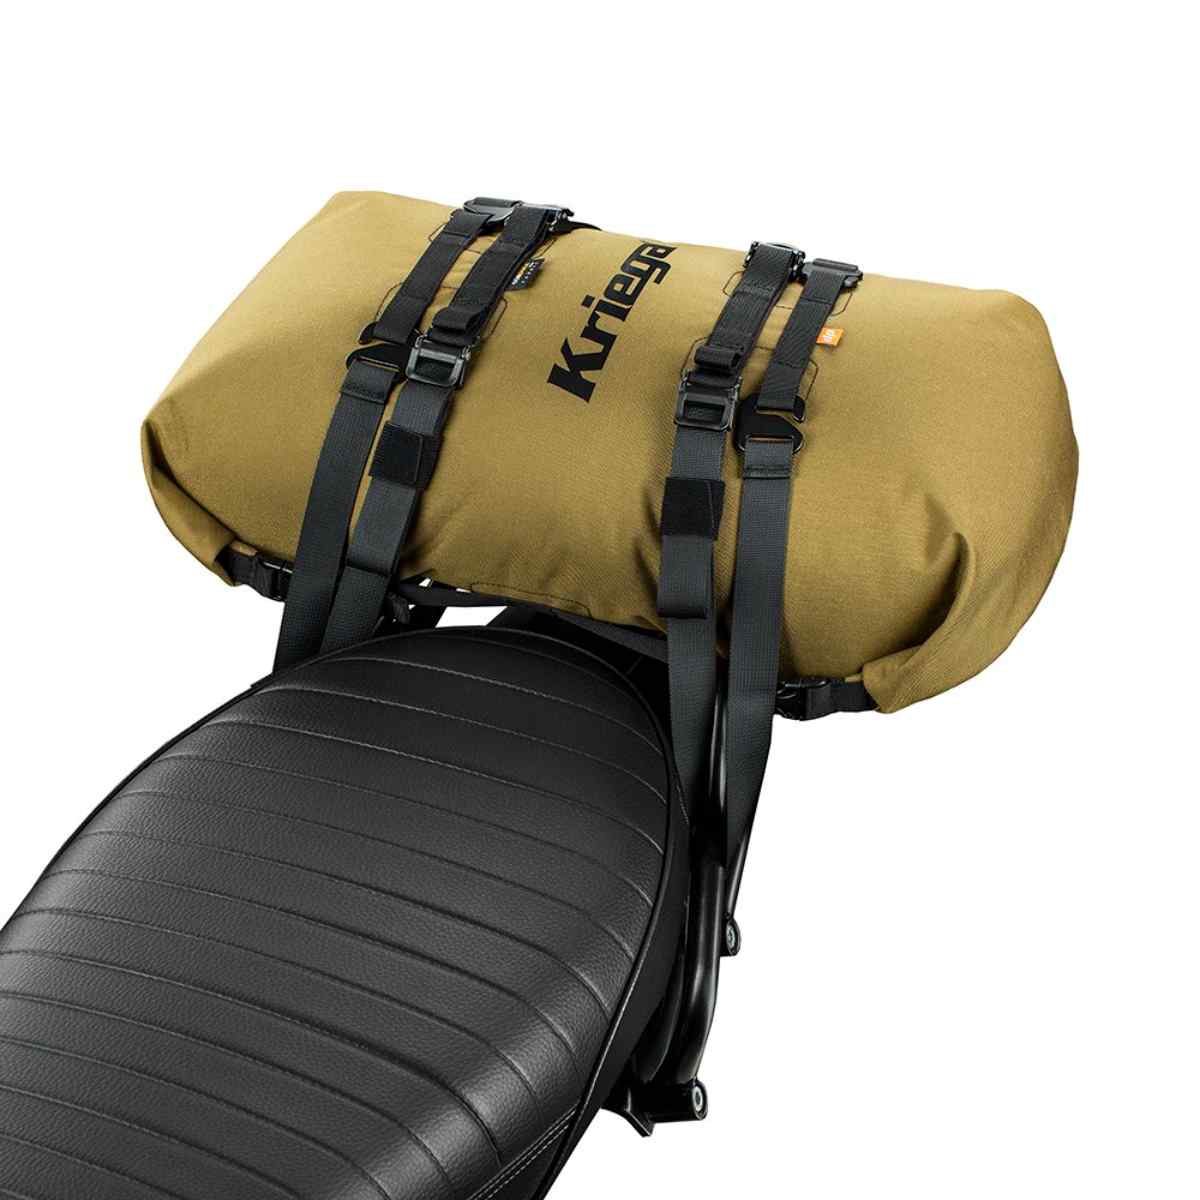 Kriega Rollpack 20L: The ultimate waterproof luggage solution